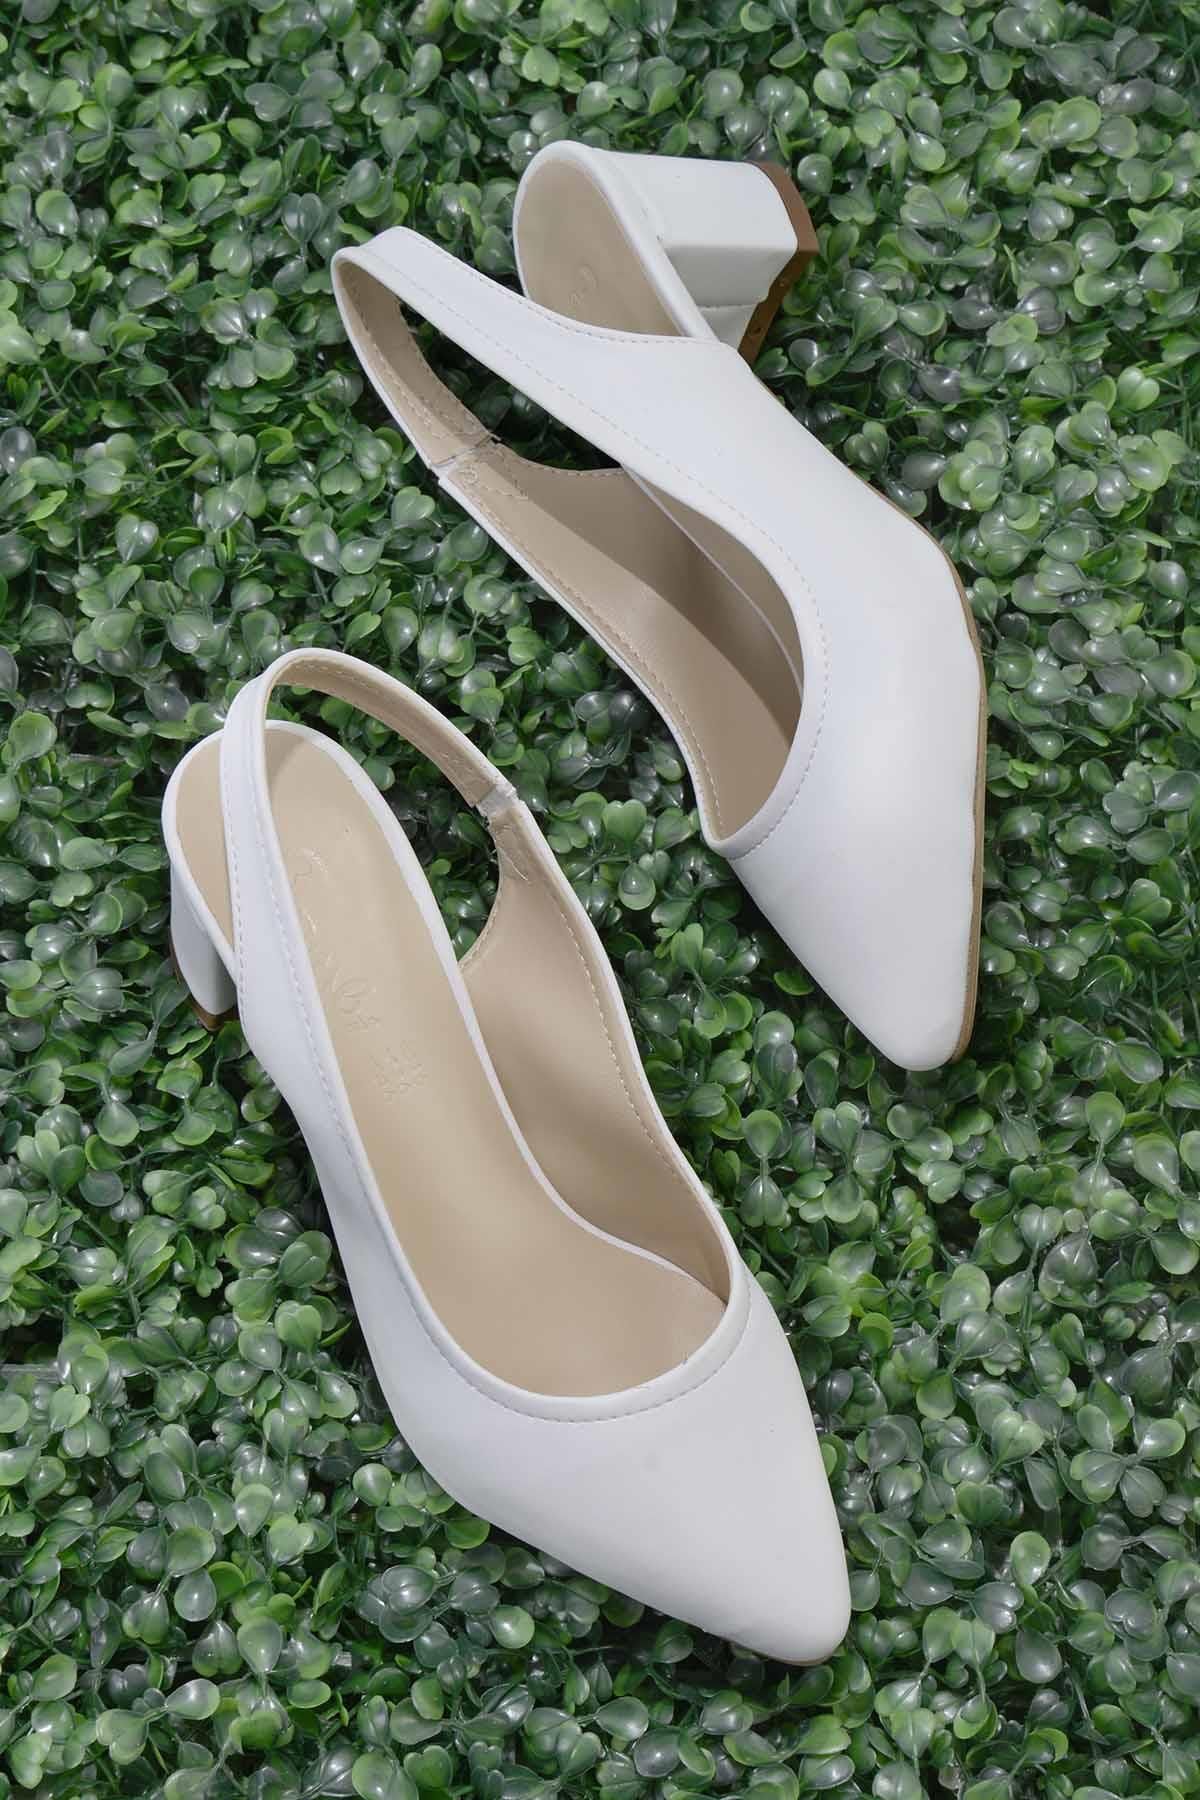 Bambi Beyaz Kadın Klasik Topuklu Ayakkabı K01503721009